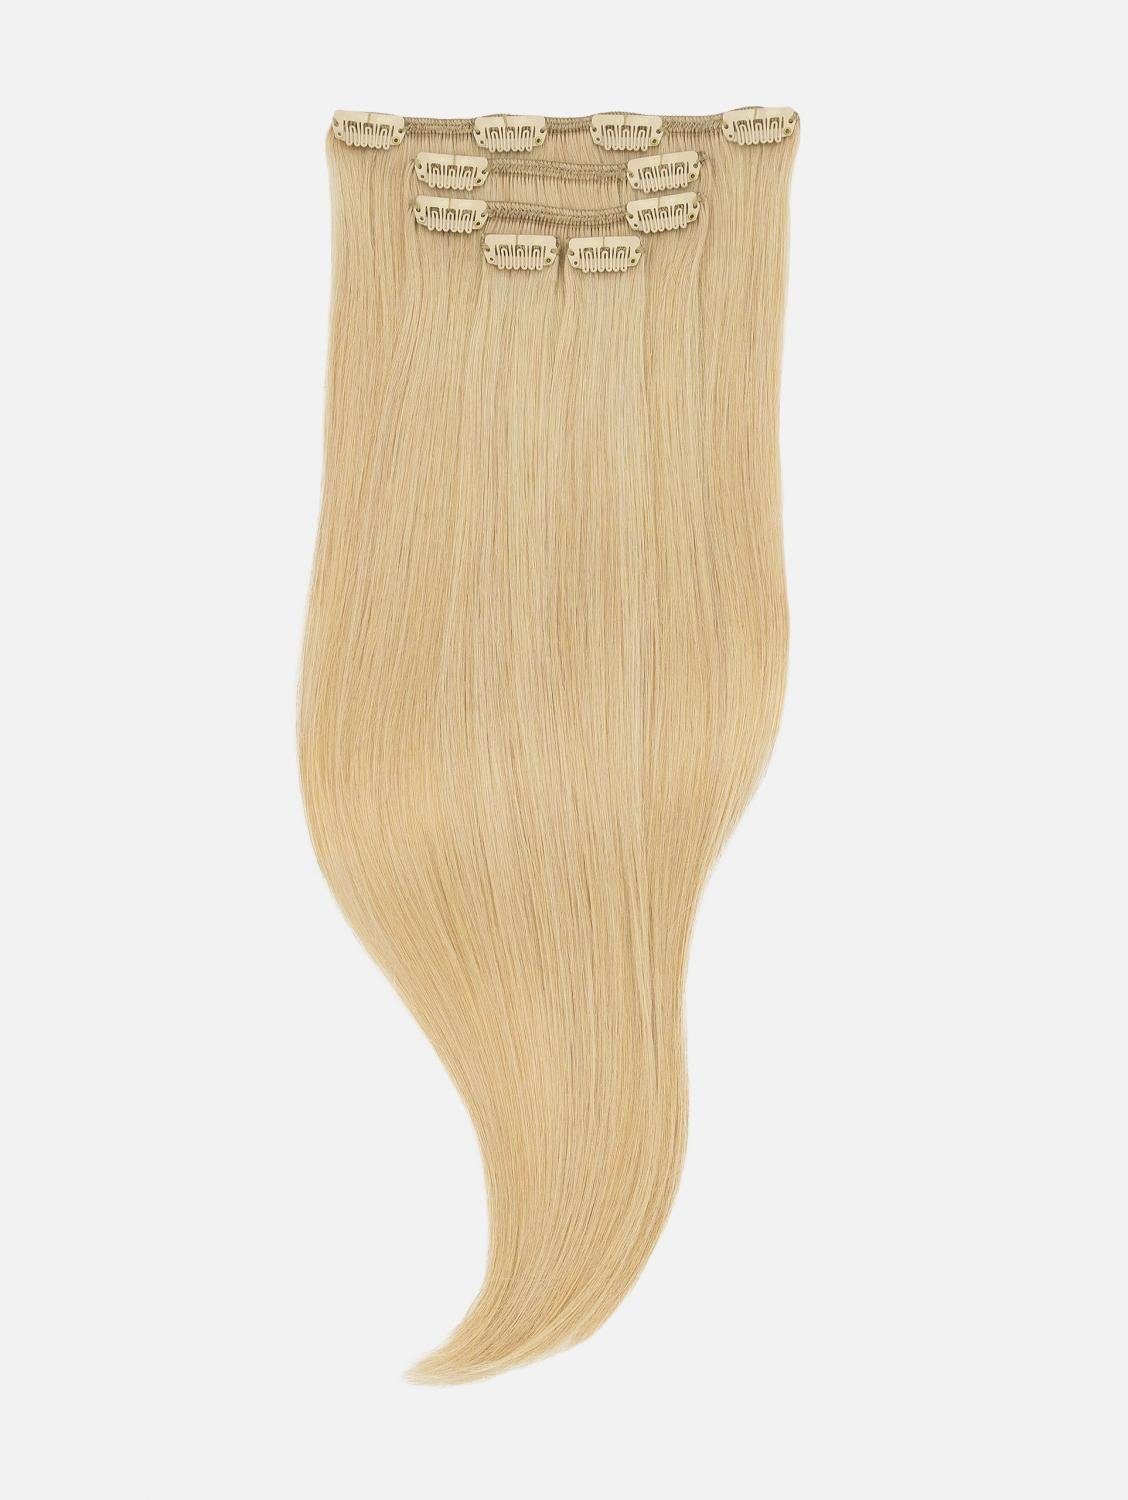 5-teilig NATURAL Extensions (Pin #24 Blonde) - Haarverlängerung 40cm, Clip-In Echthaar-Extension EH Echthaar Echthaar - 50cm, Up Seidenglatt